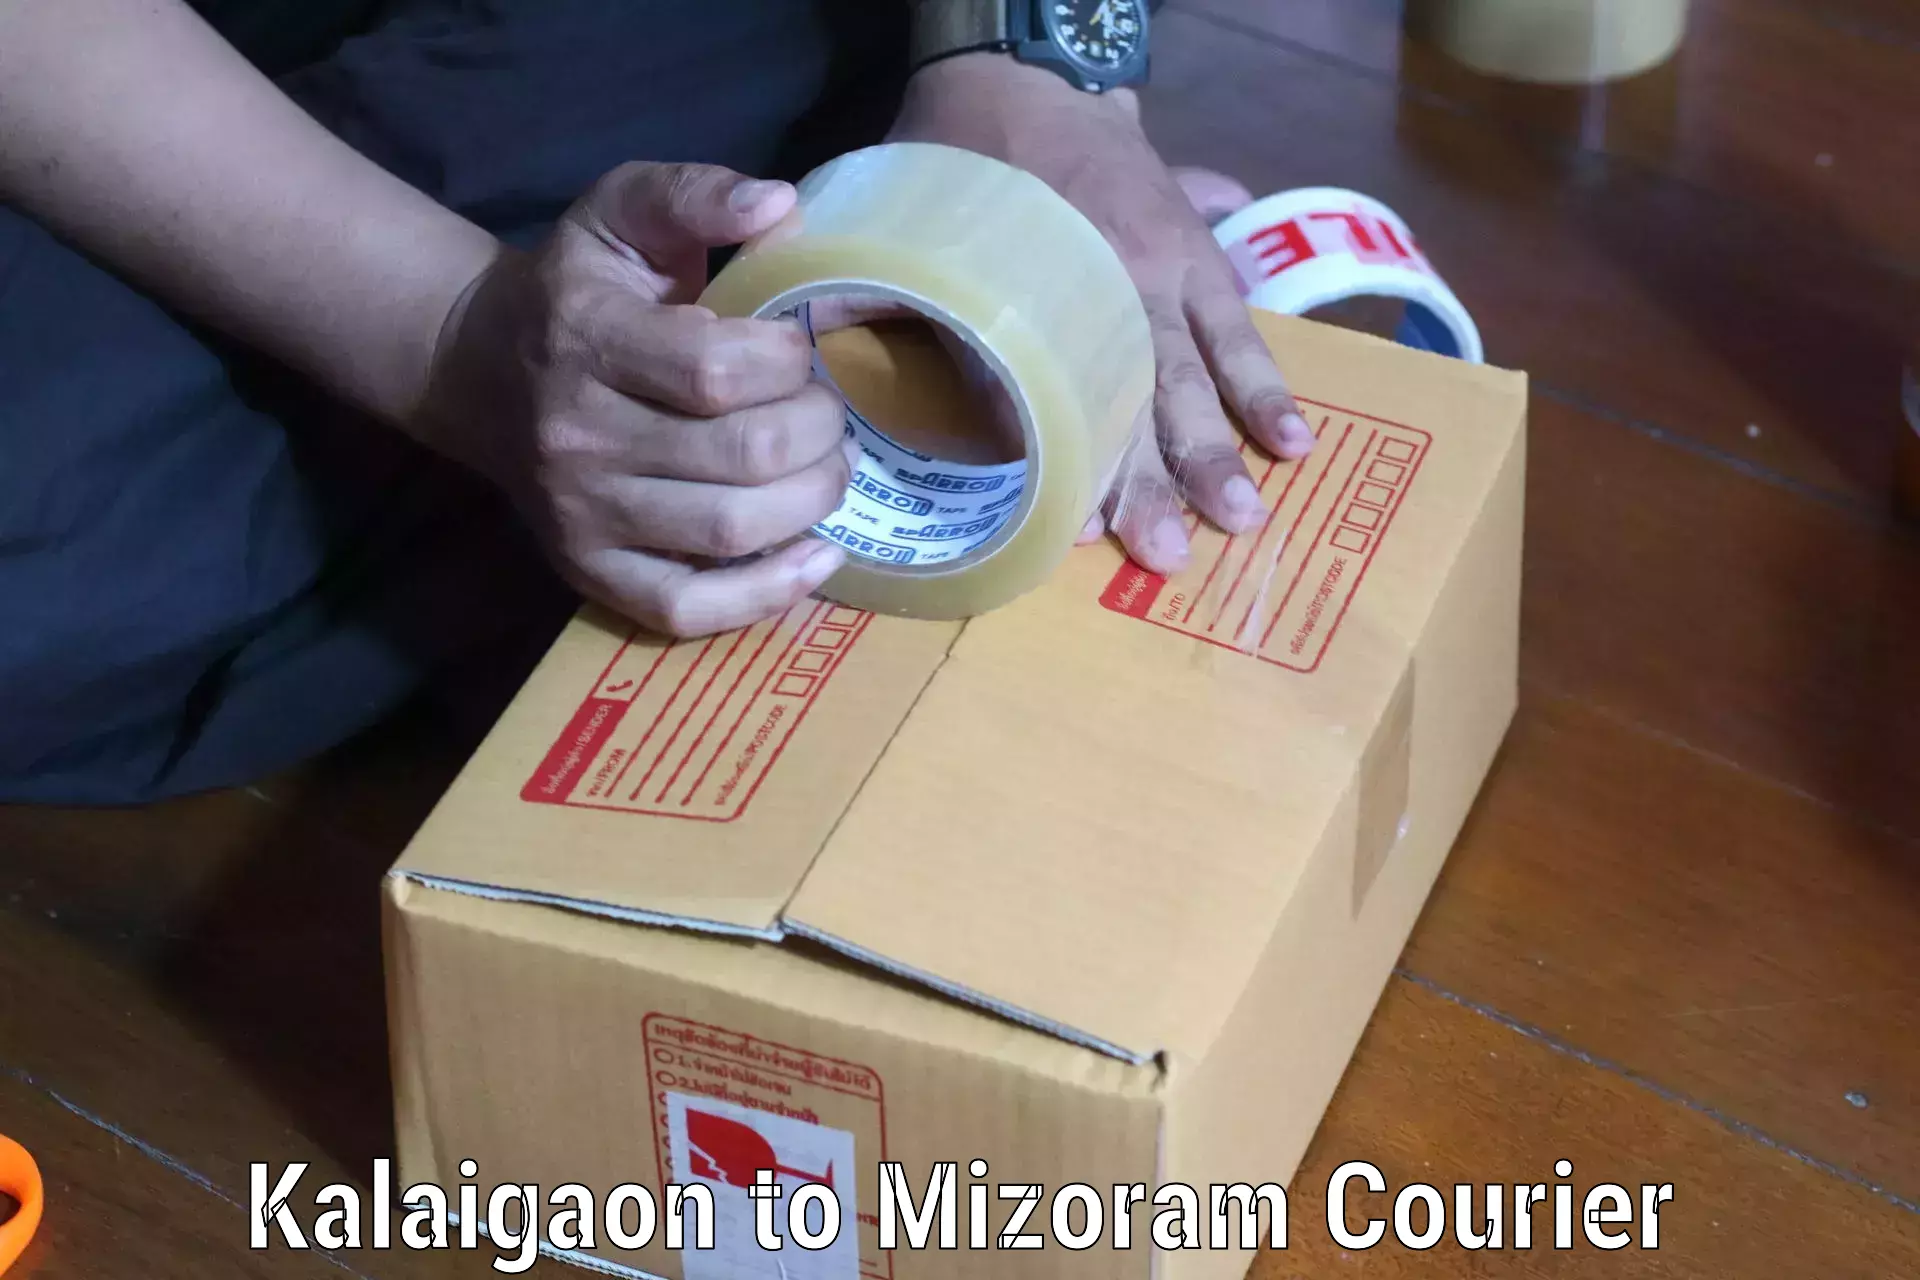 Full-service courier options Kalaigaon to Mizoram